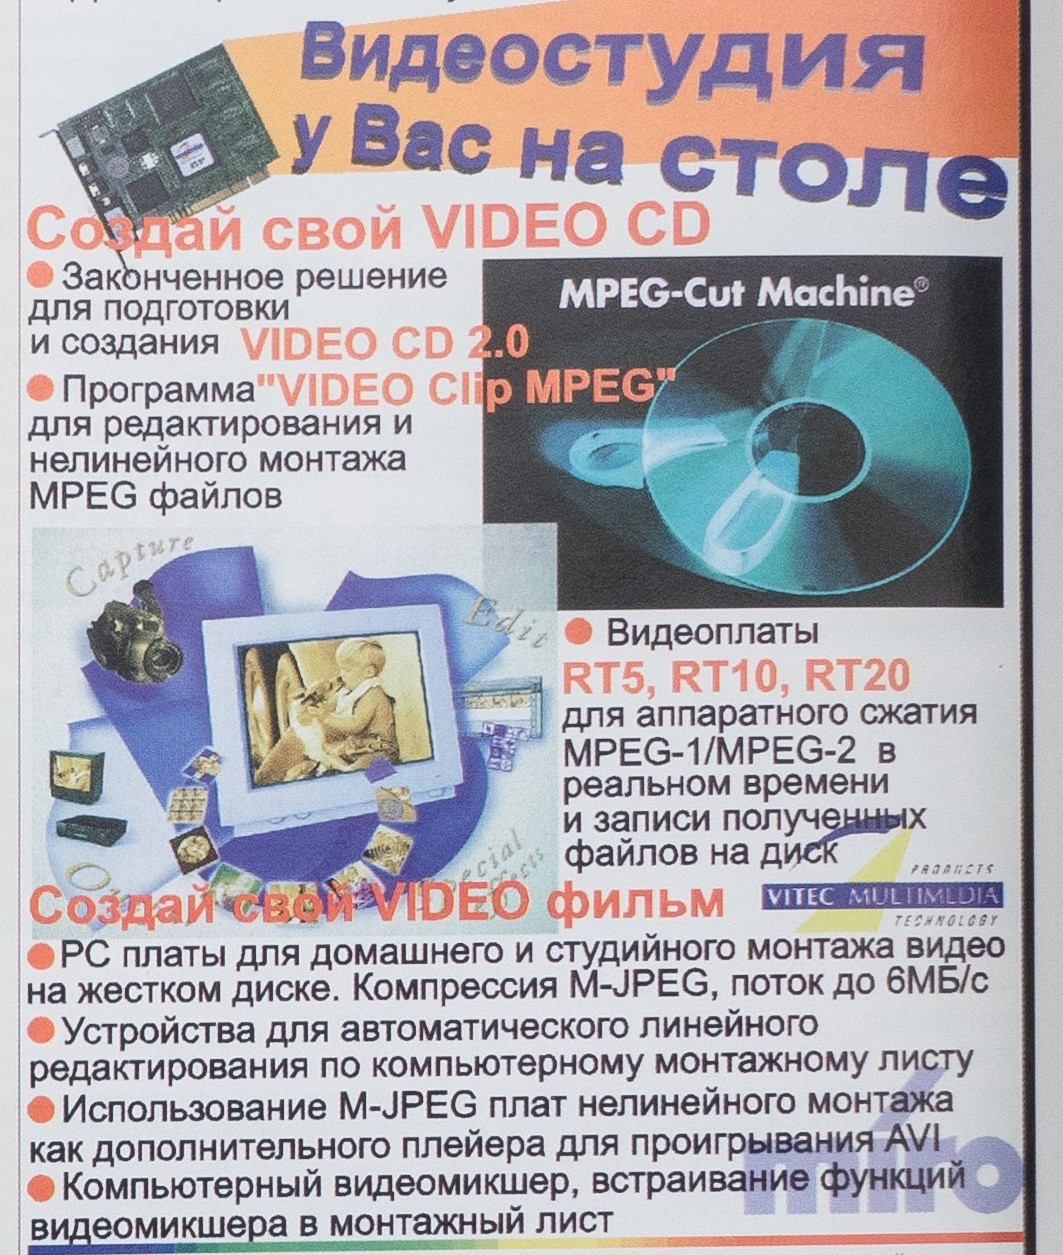 Древности: компьютерная реклама 1997 года - 21